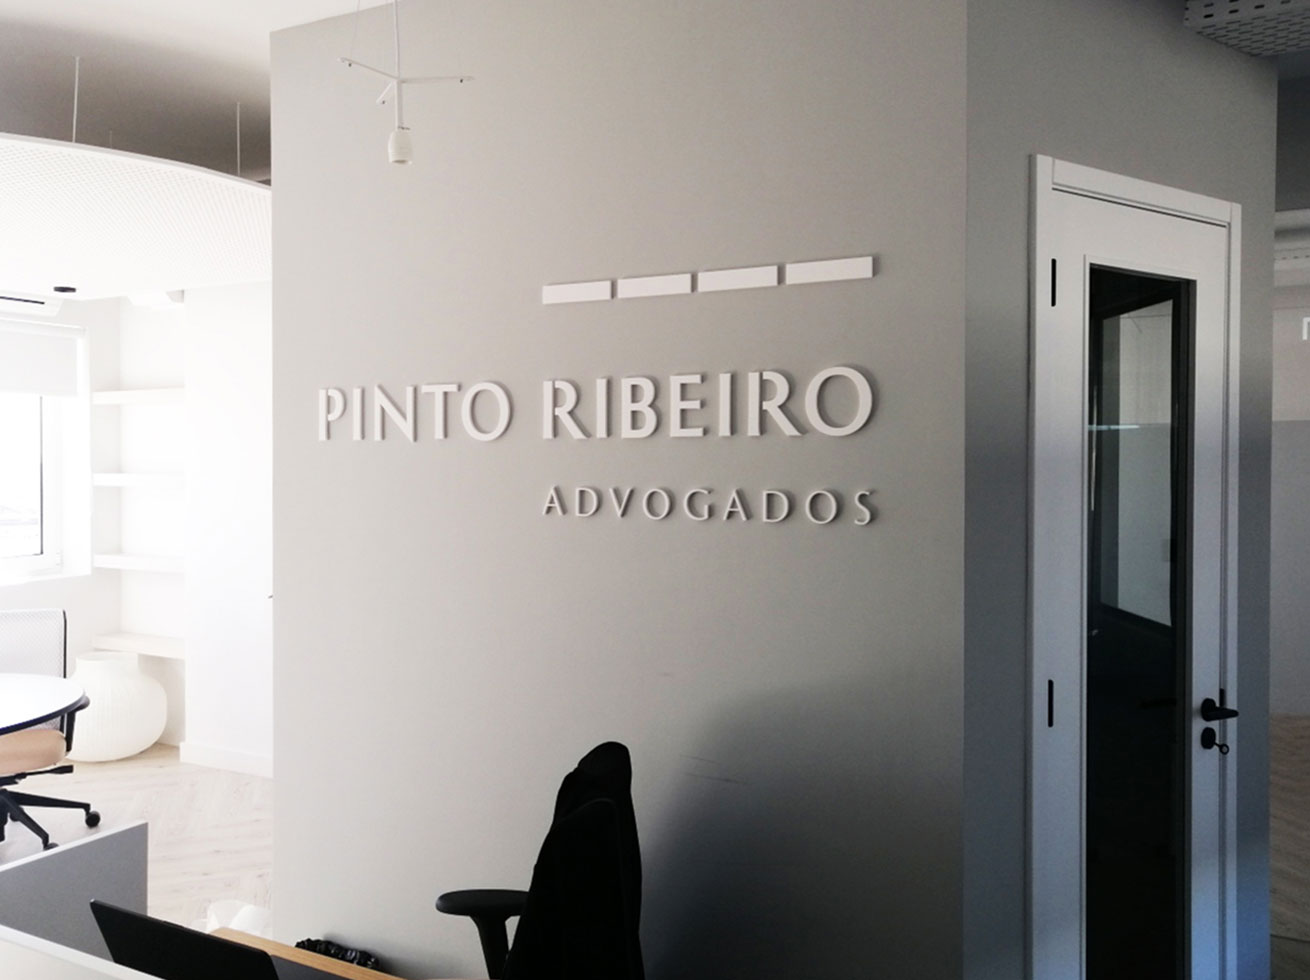 PINTO RIBEIRO branding by MCBS